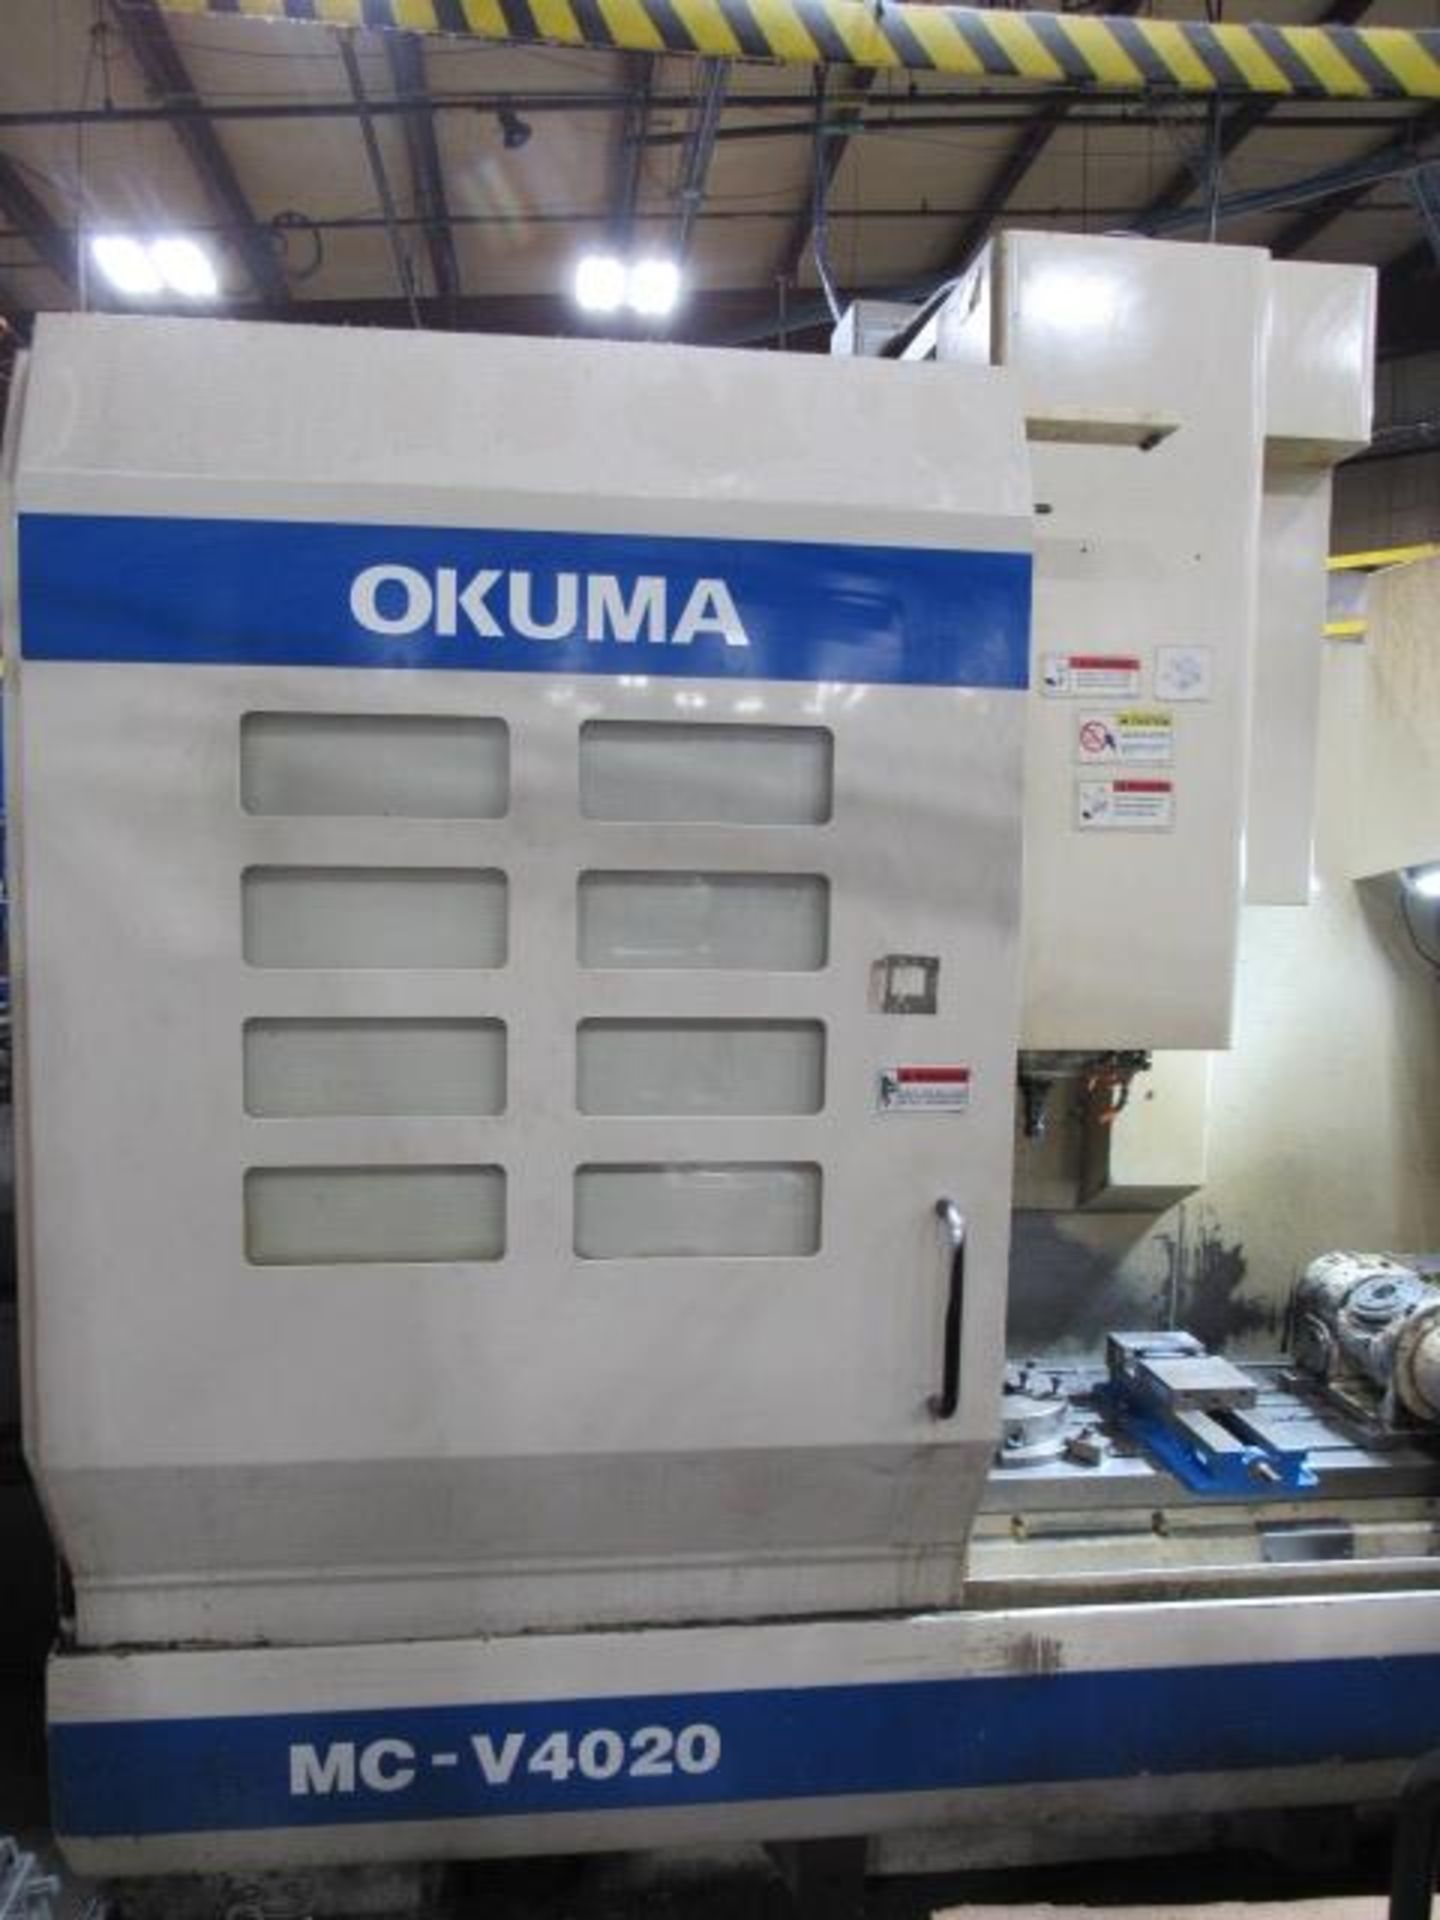 Okuma MC-V4020 5 Axis CNC Vertical Machining Center - Image 8 of 18